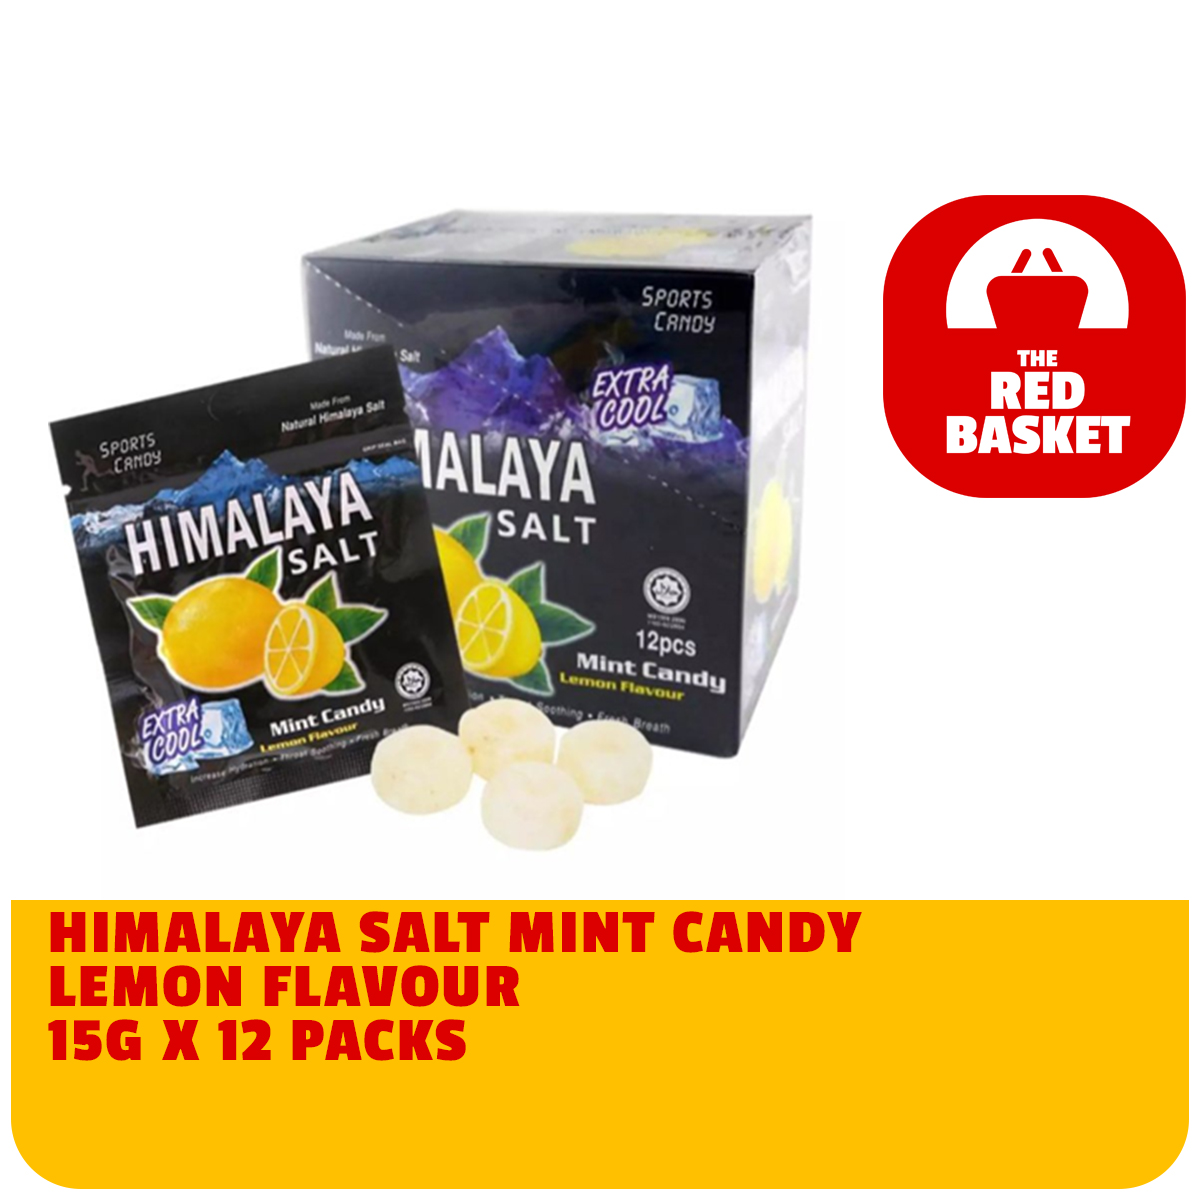 Himalaya Salt Candy Himalaya Salt Sports Mint Candy Reviews